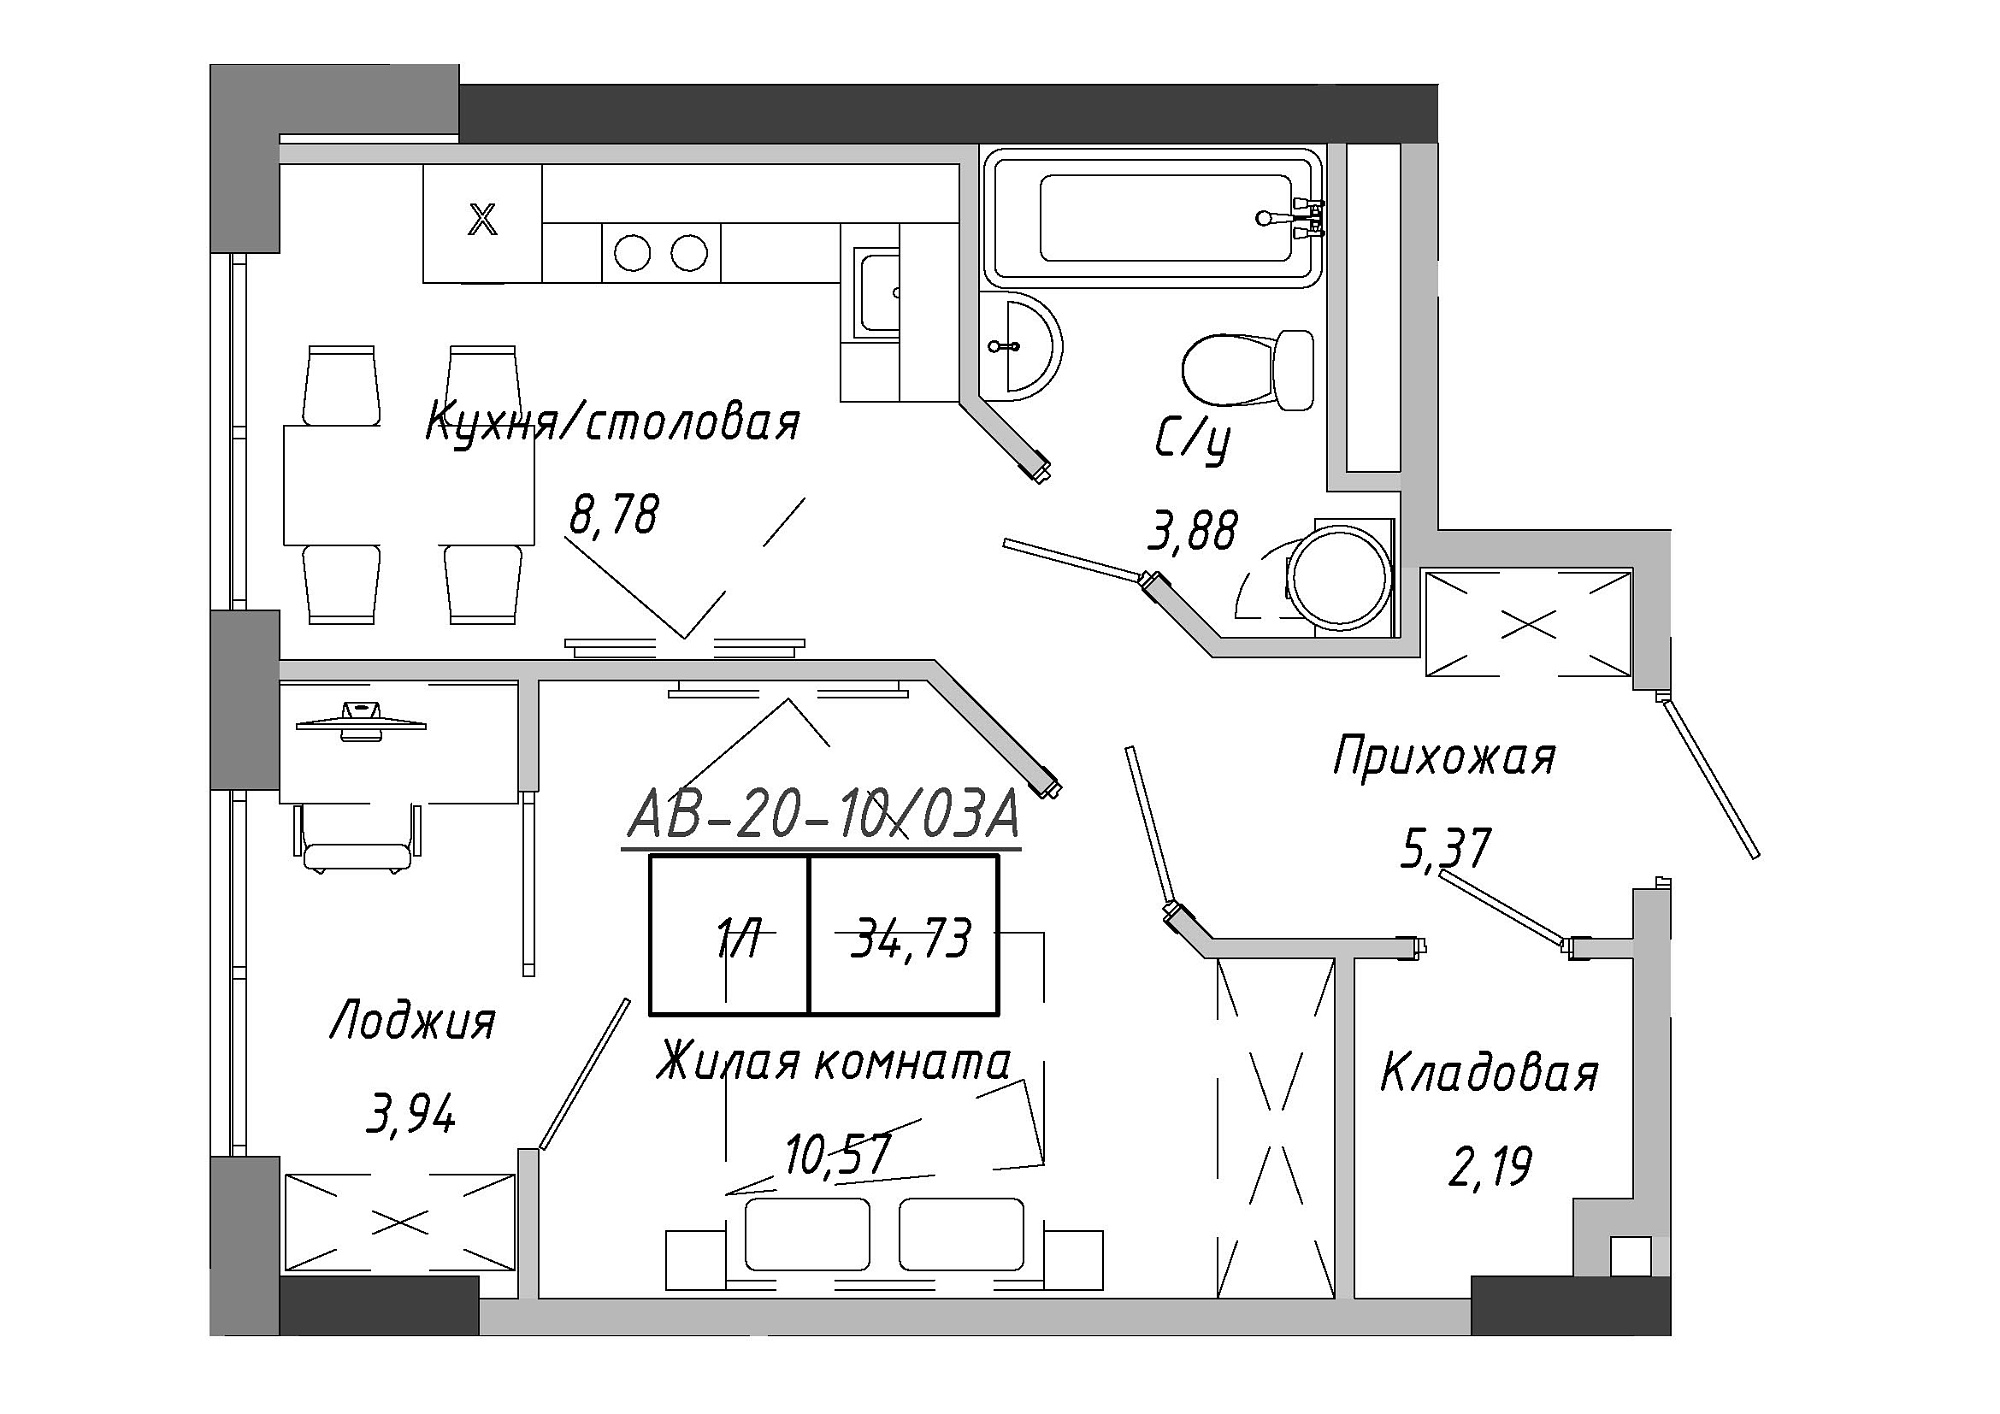 Планування 1-к квартира площею 35.26м2, AB-20-10/0003а.